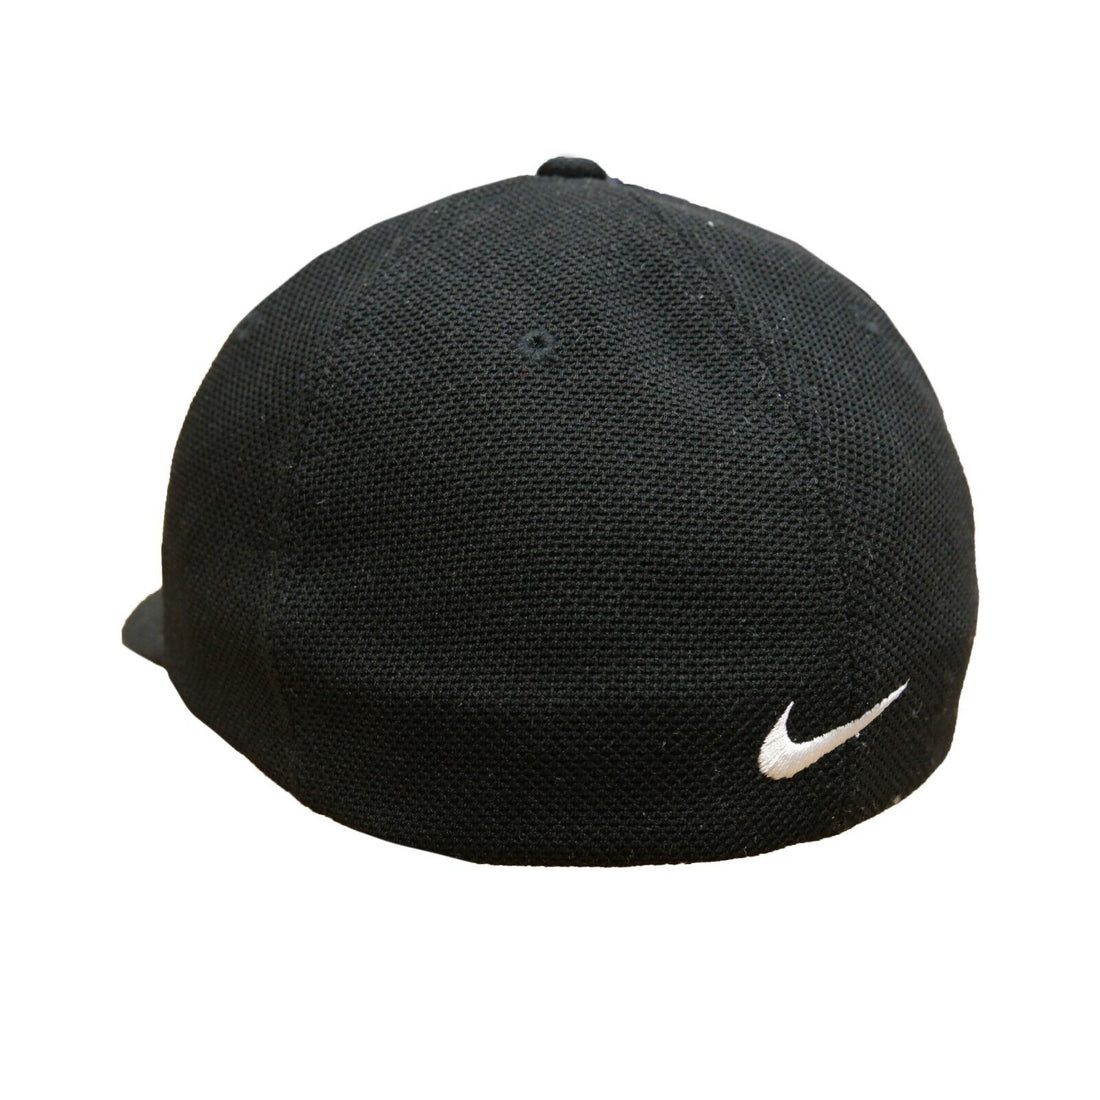 Vintage Tiger Woods Nike Fitted Hat Size Large Black Flexfit Golf